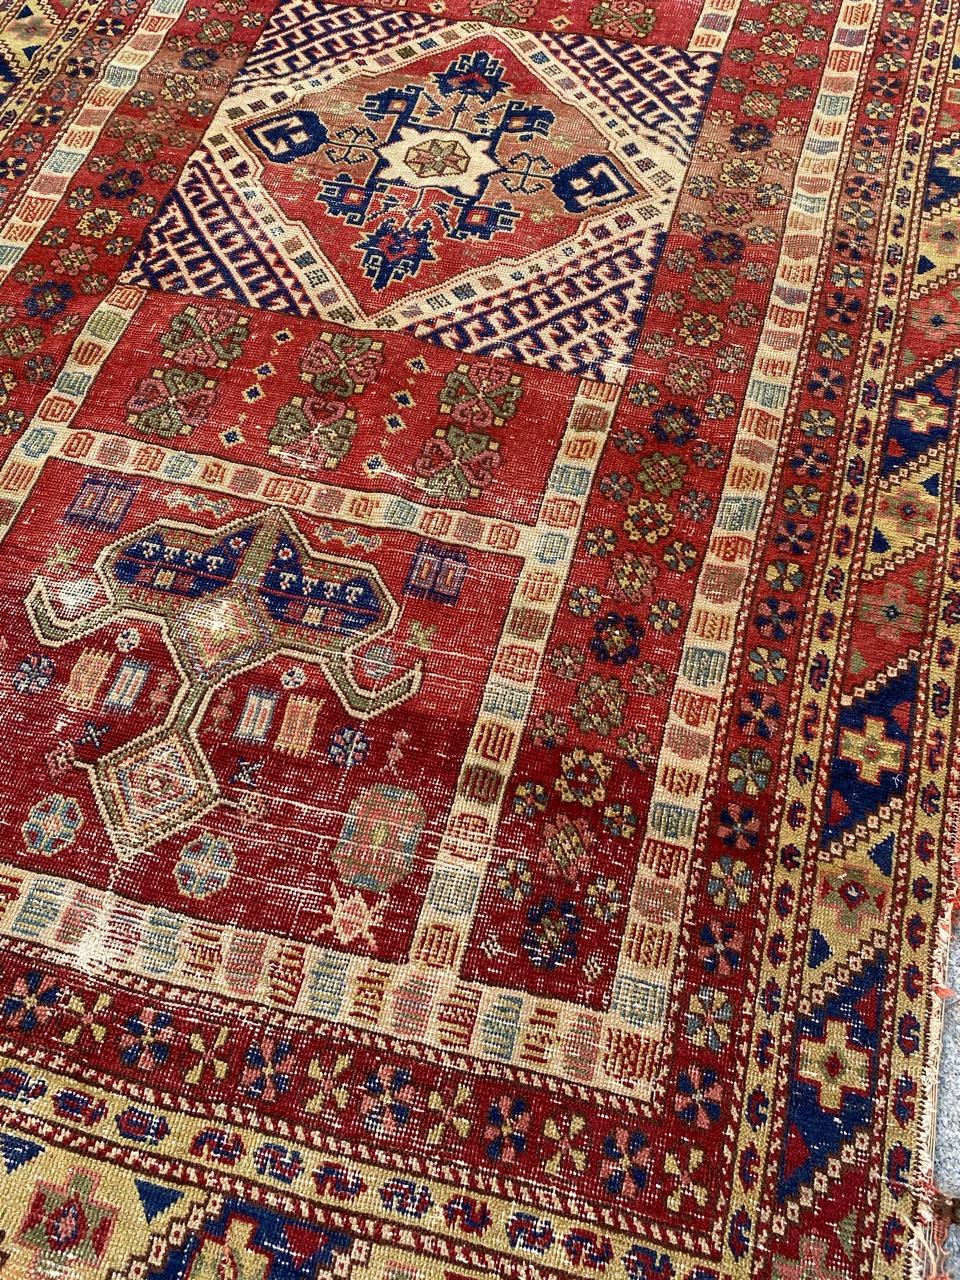 Exquis tapis turc du début du 20e siècle, doté d'un superbe motif décoratif aux couleurs vibrantes (rouge, bleu, jaune, vert et rose). Ce chef-d'œuvre noué à la main présente un velours de laine sur une base de coton. Le riche fond rouge brique est